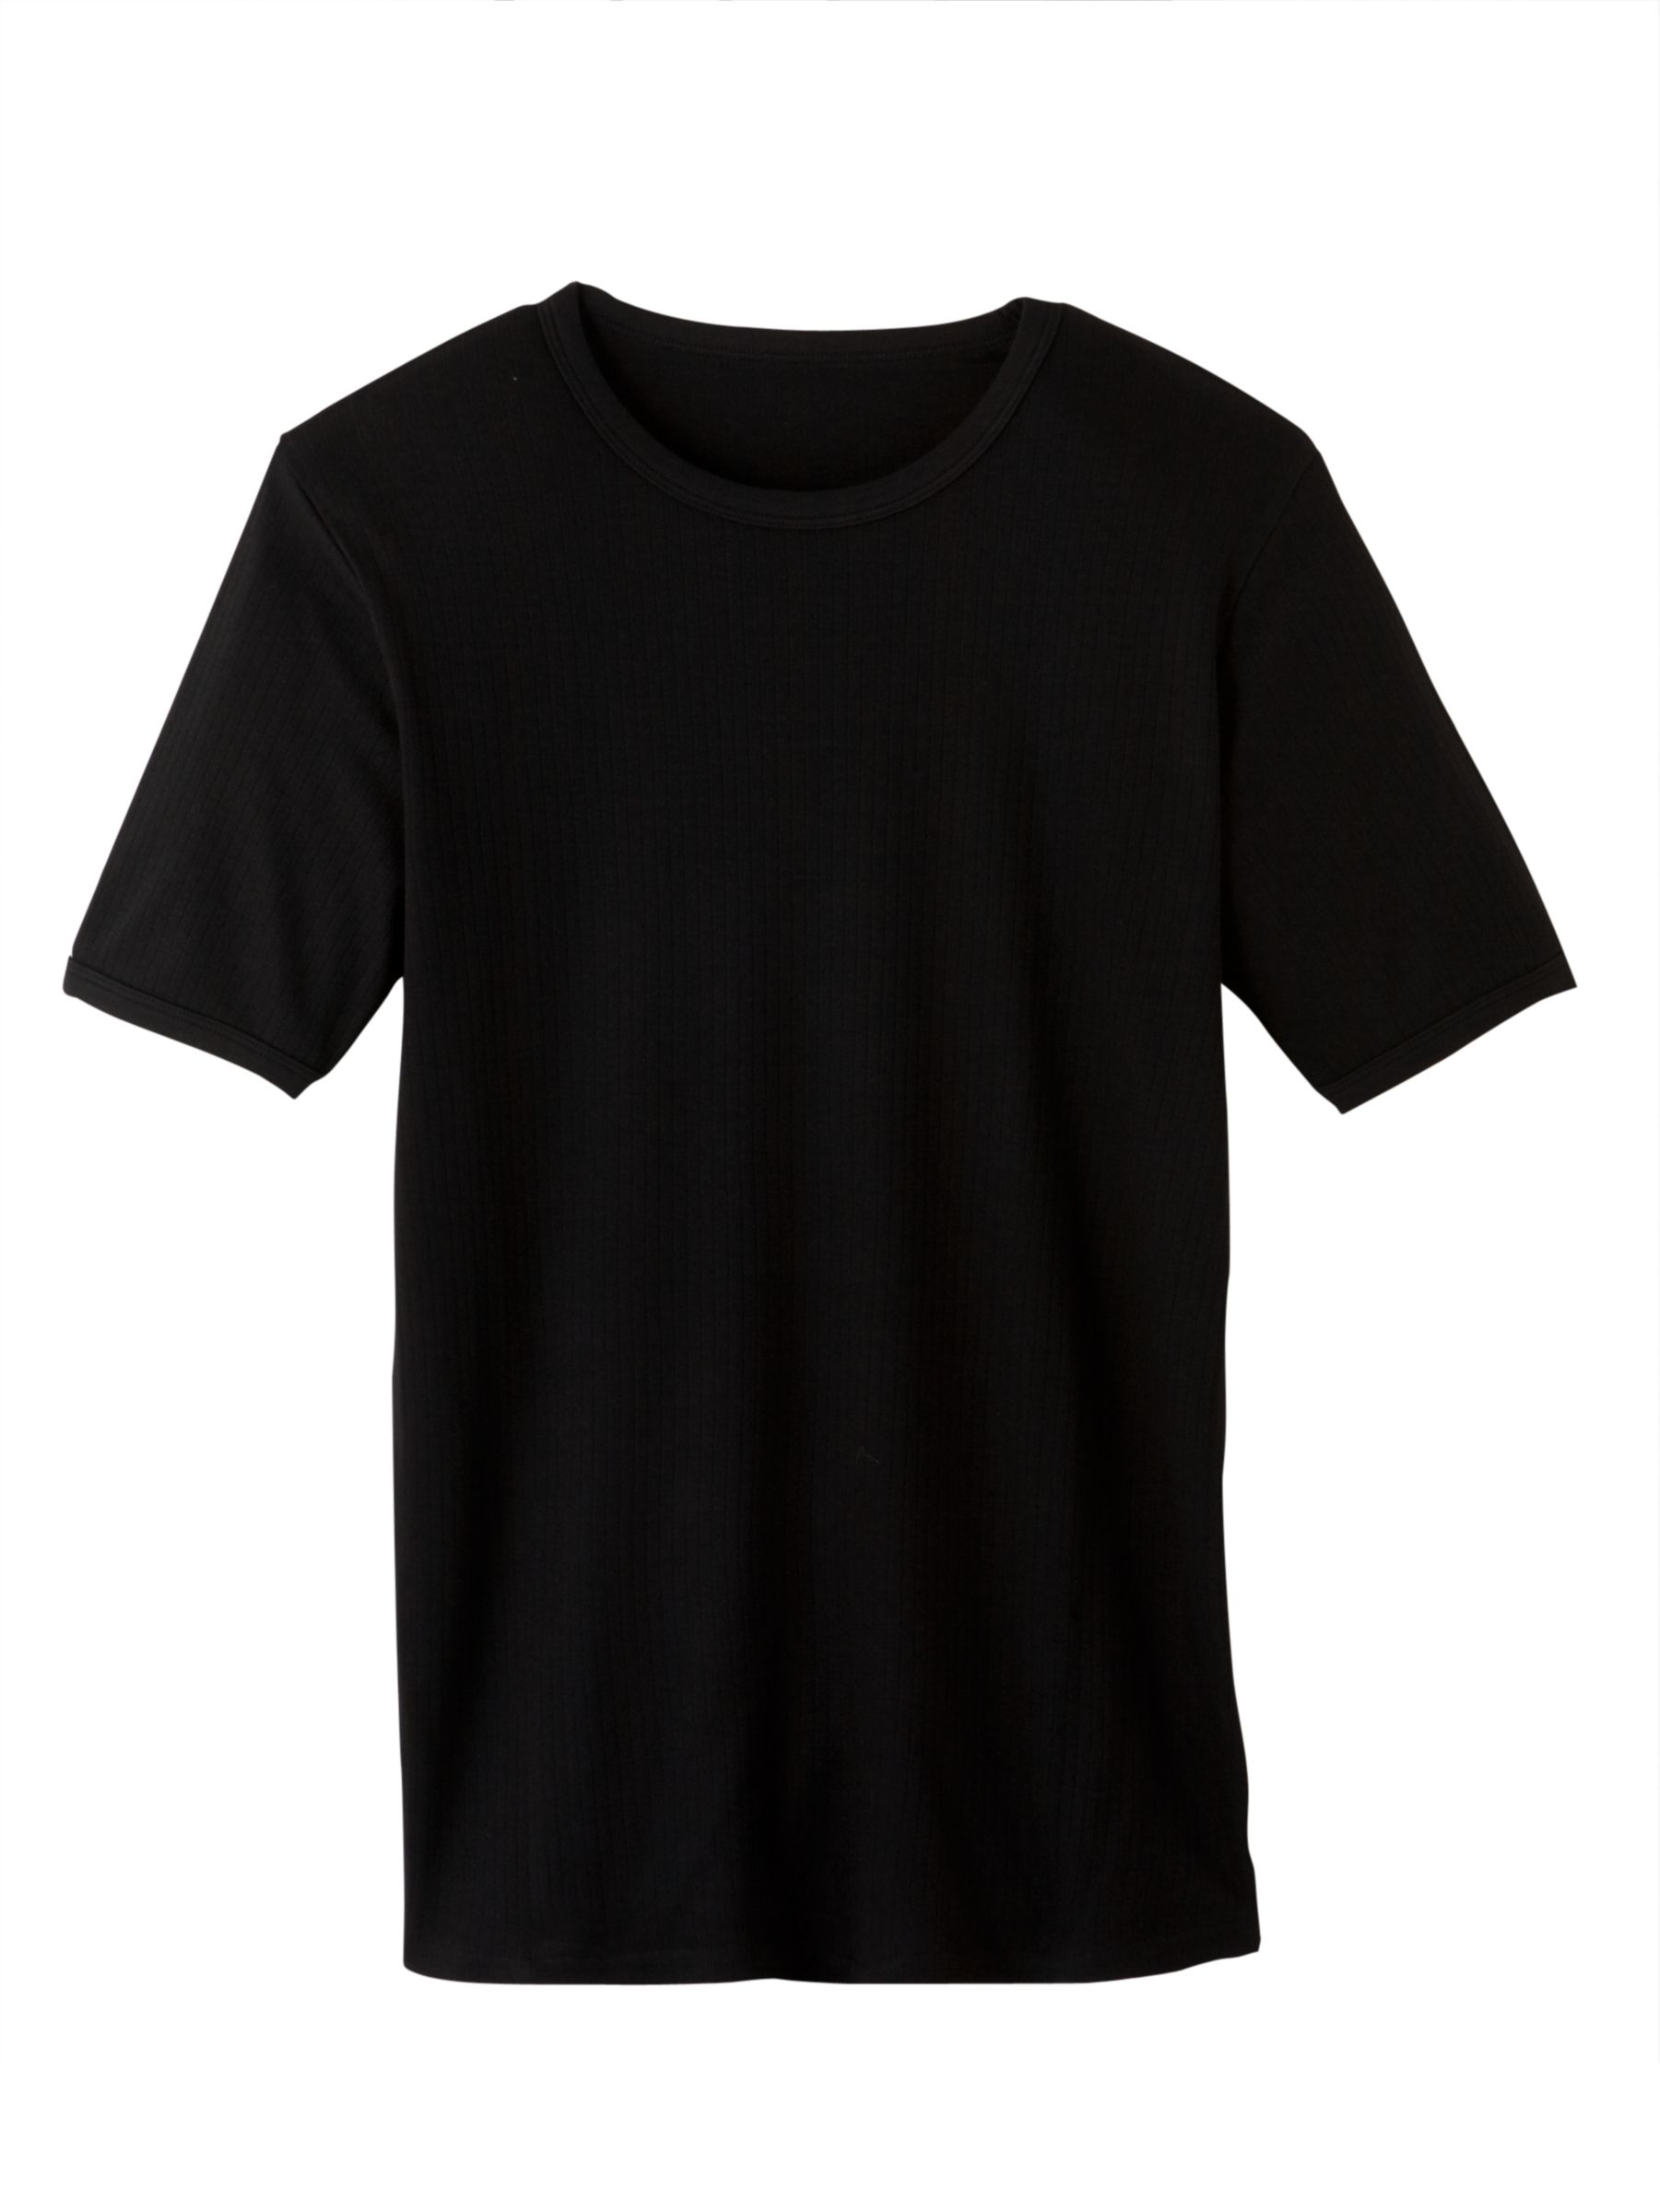 John Lewis Mens Thermal T-Shirt, Black, Large